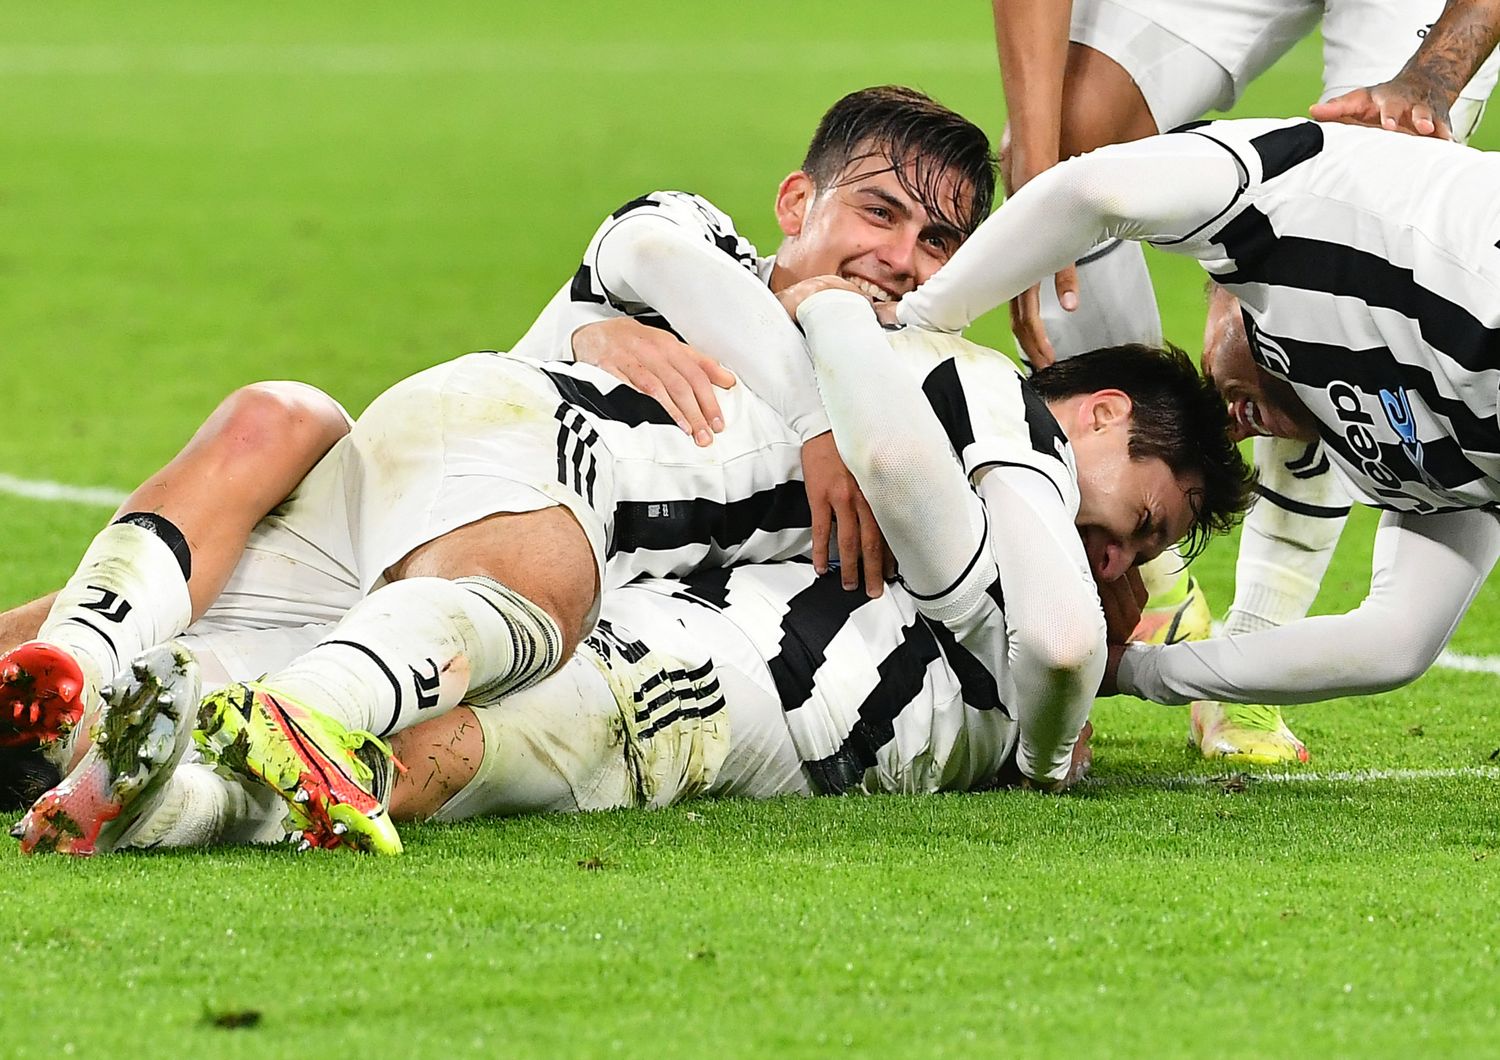 Giocatori della Juventus esultano dopo vittoria con lo Zenit in Champions League